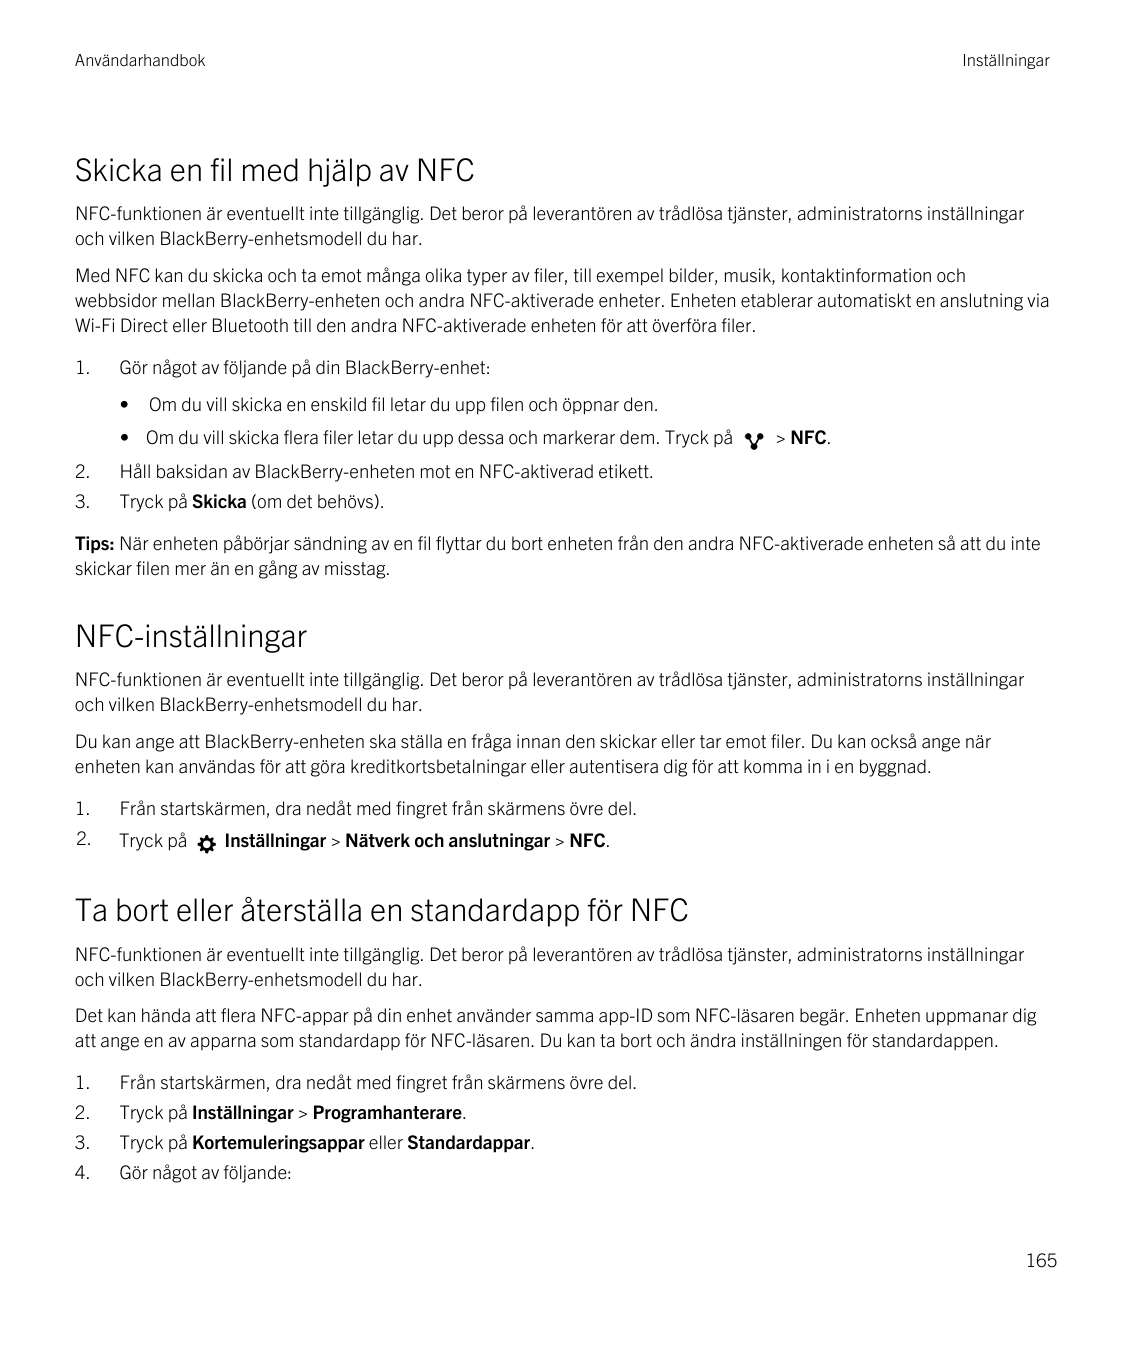 AnvändarhandbokInställningarSkicka en fil med hjälp av NFCNFC-funktionen är eventuellt inte tillgänglig. Det beror på leverantör